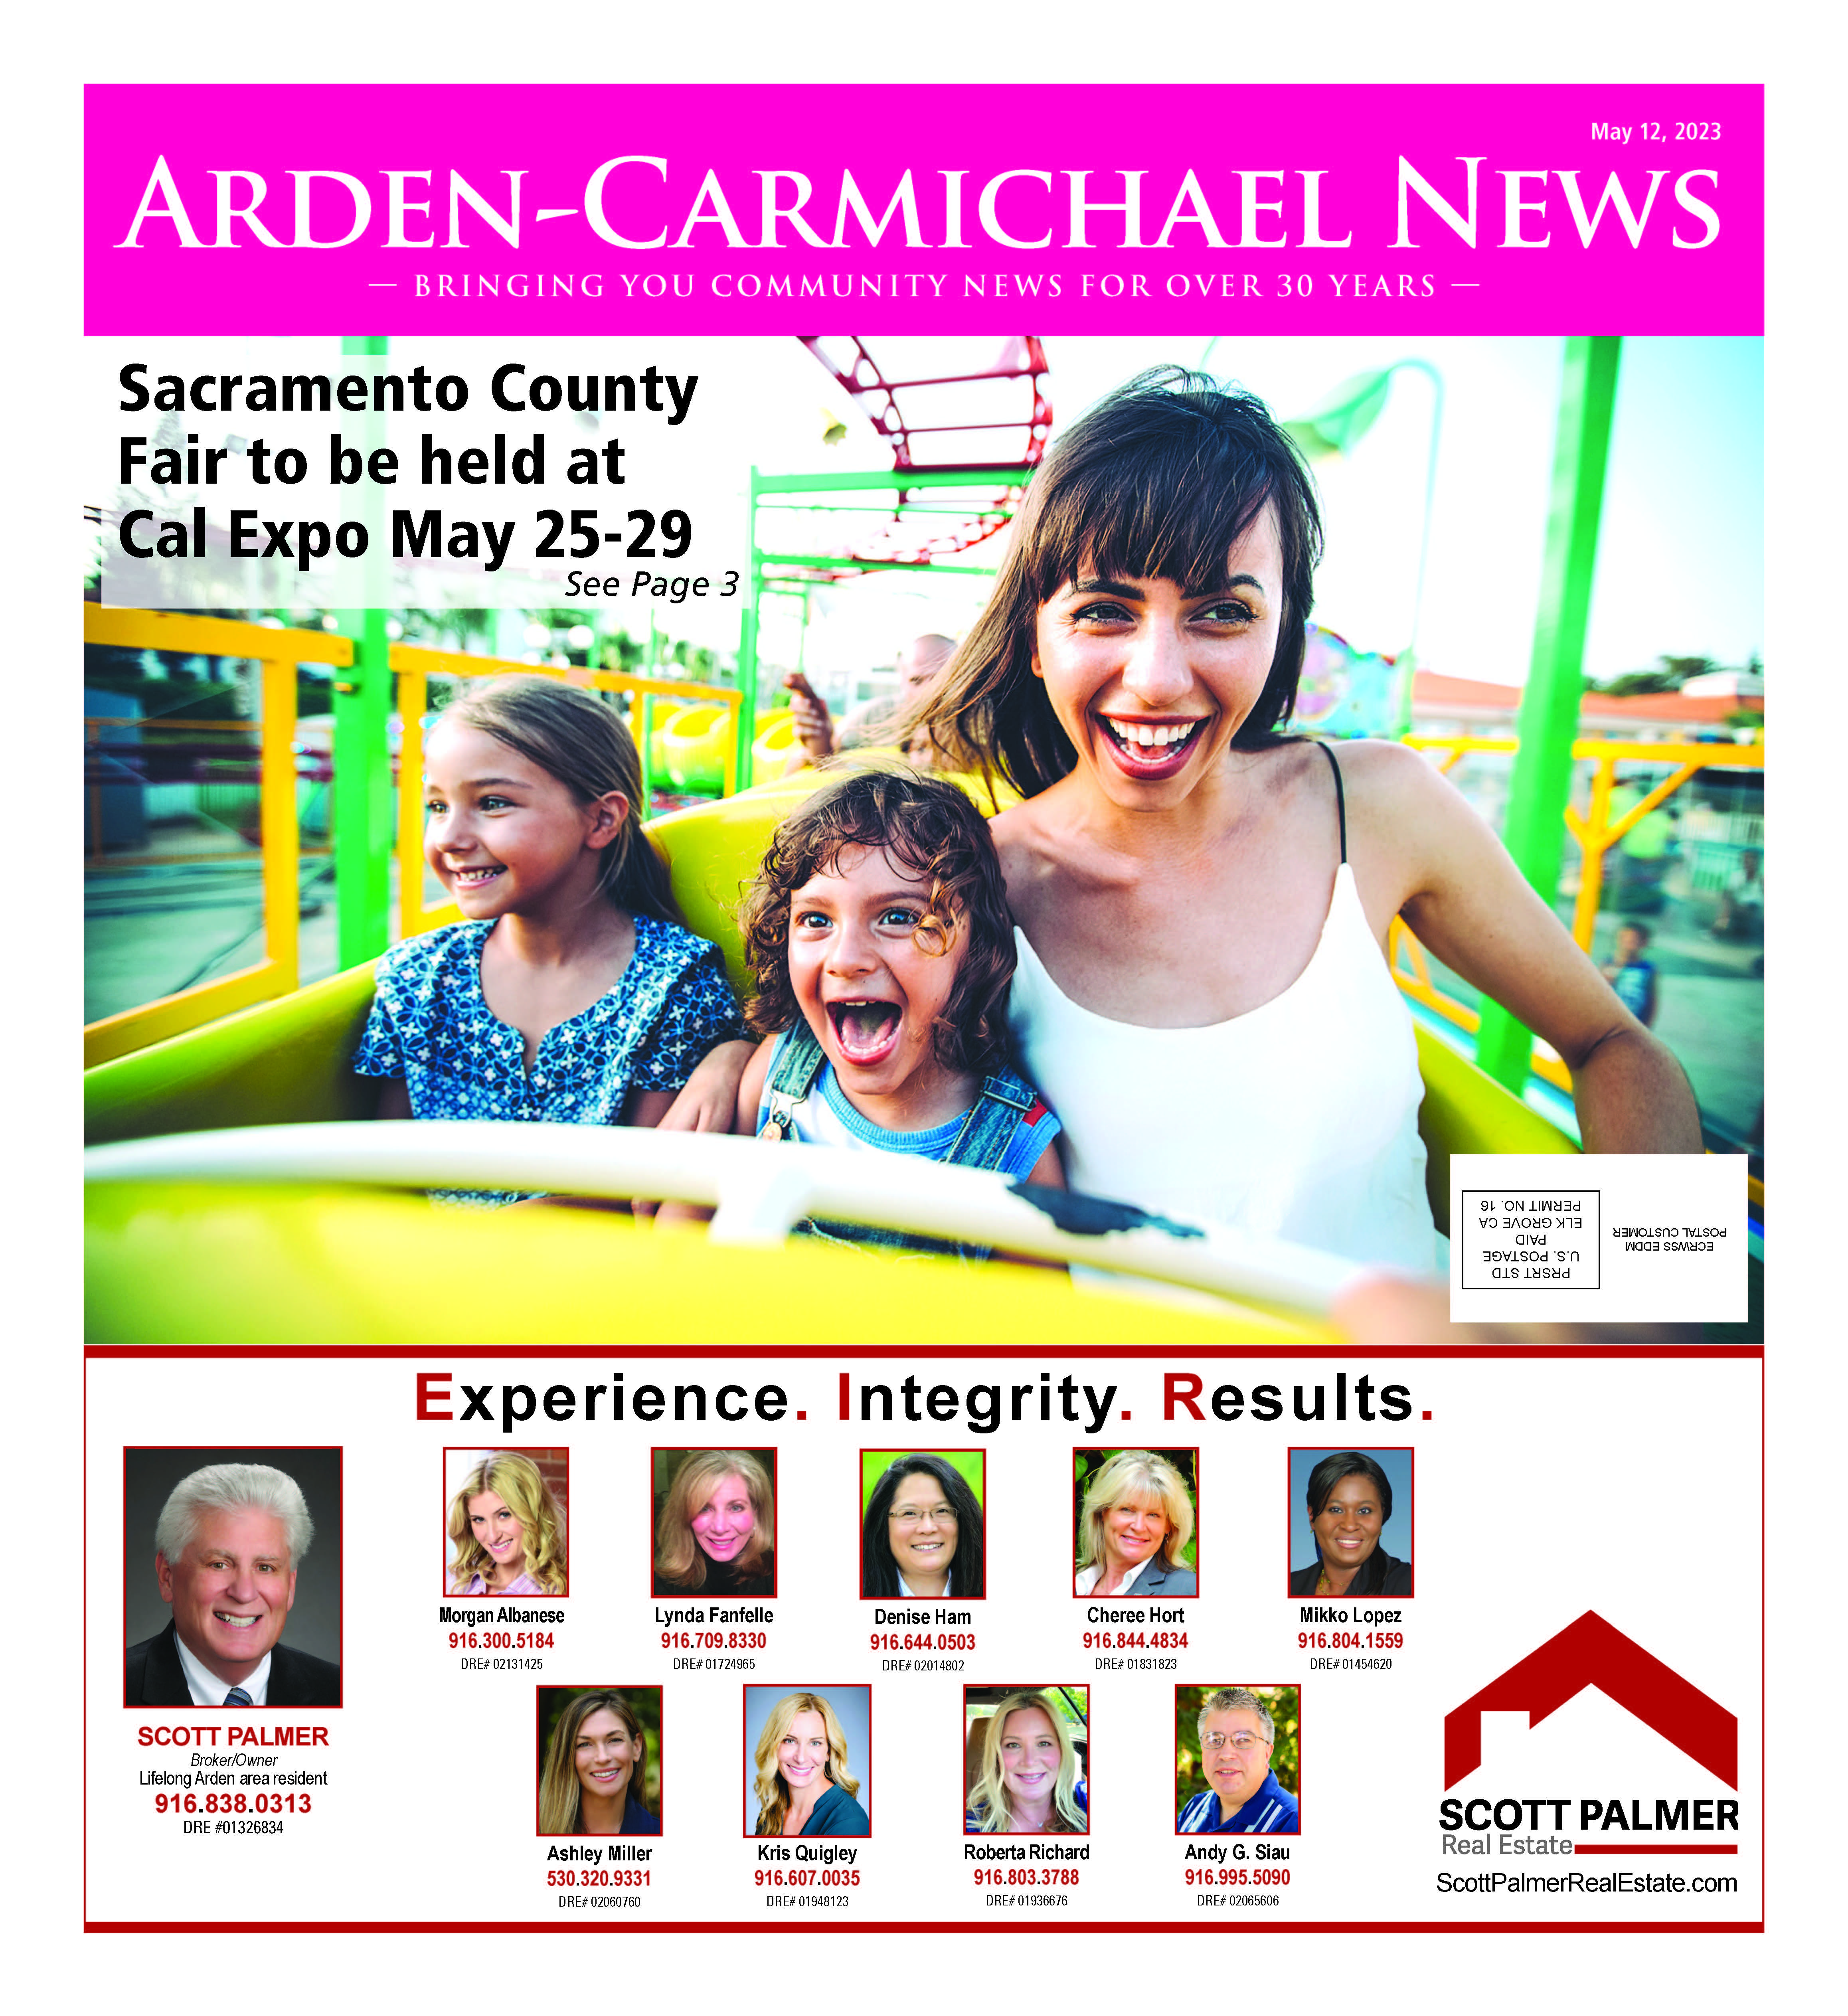 Arden-Carmichael News